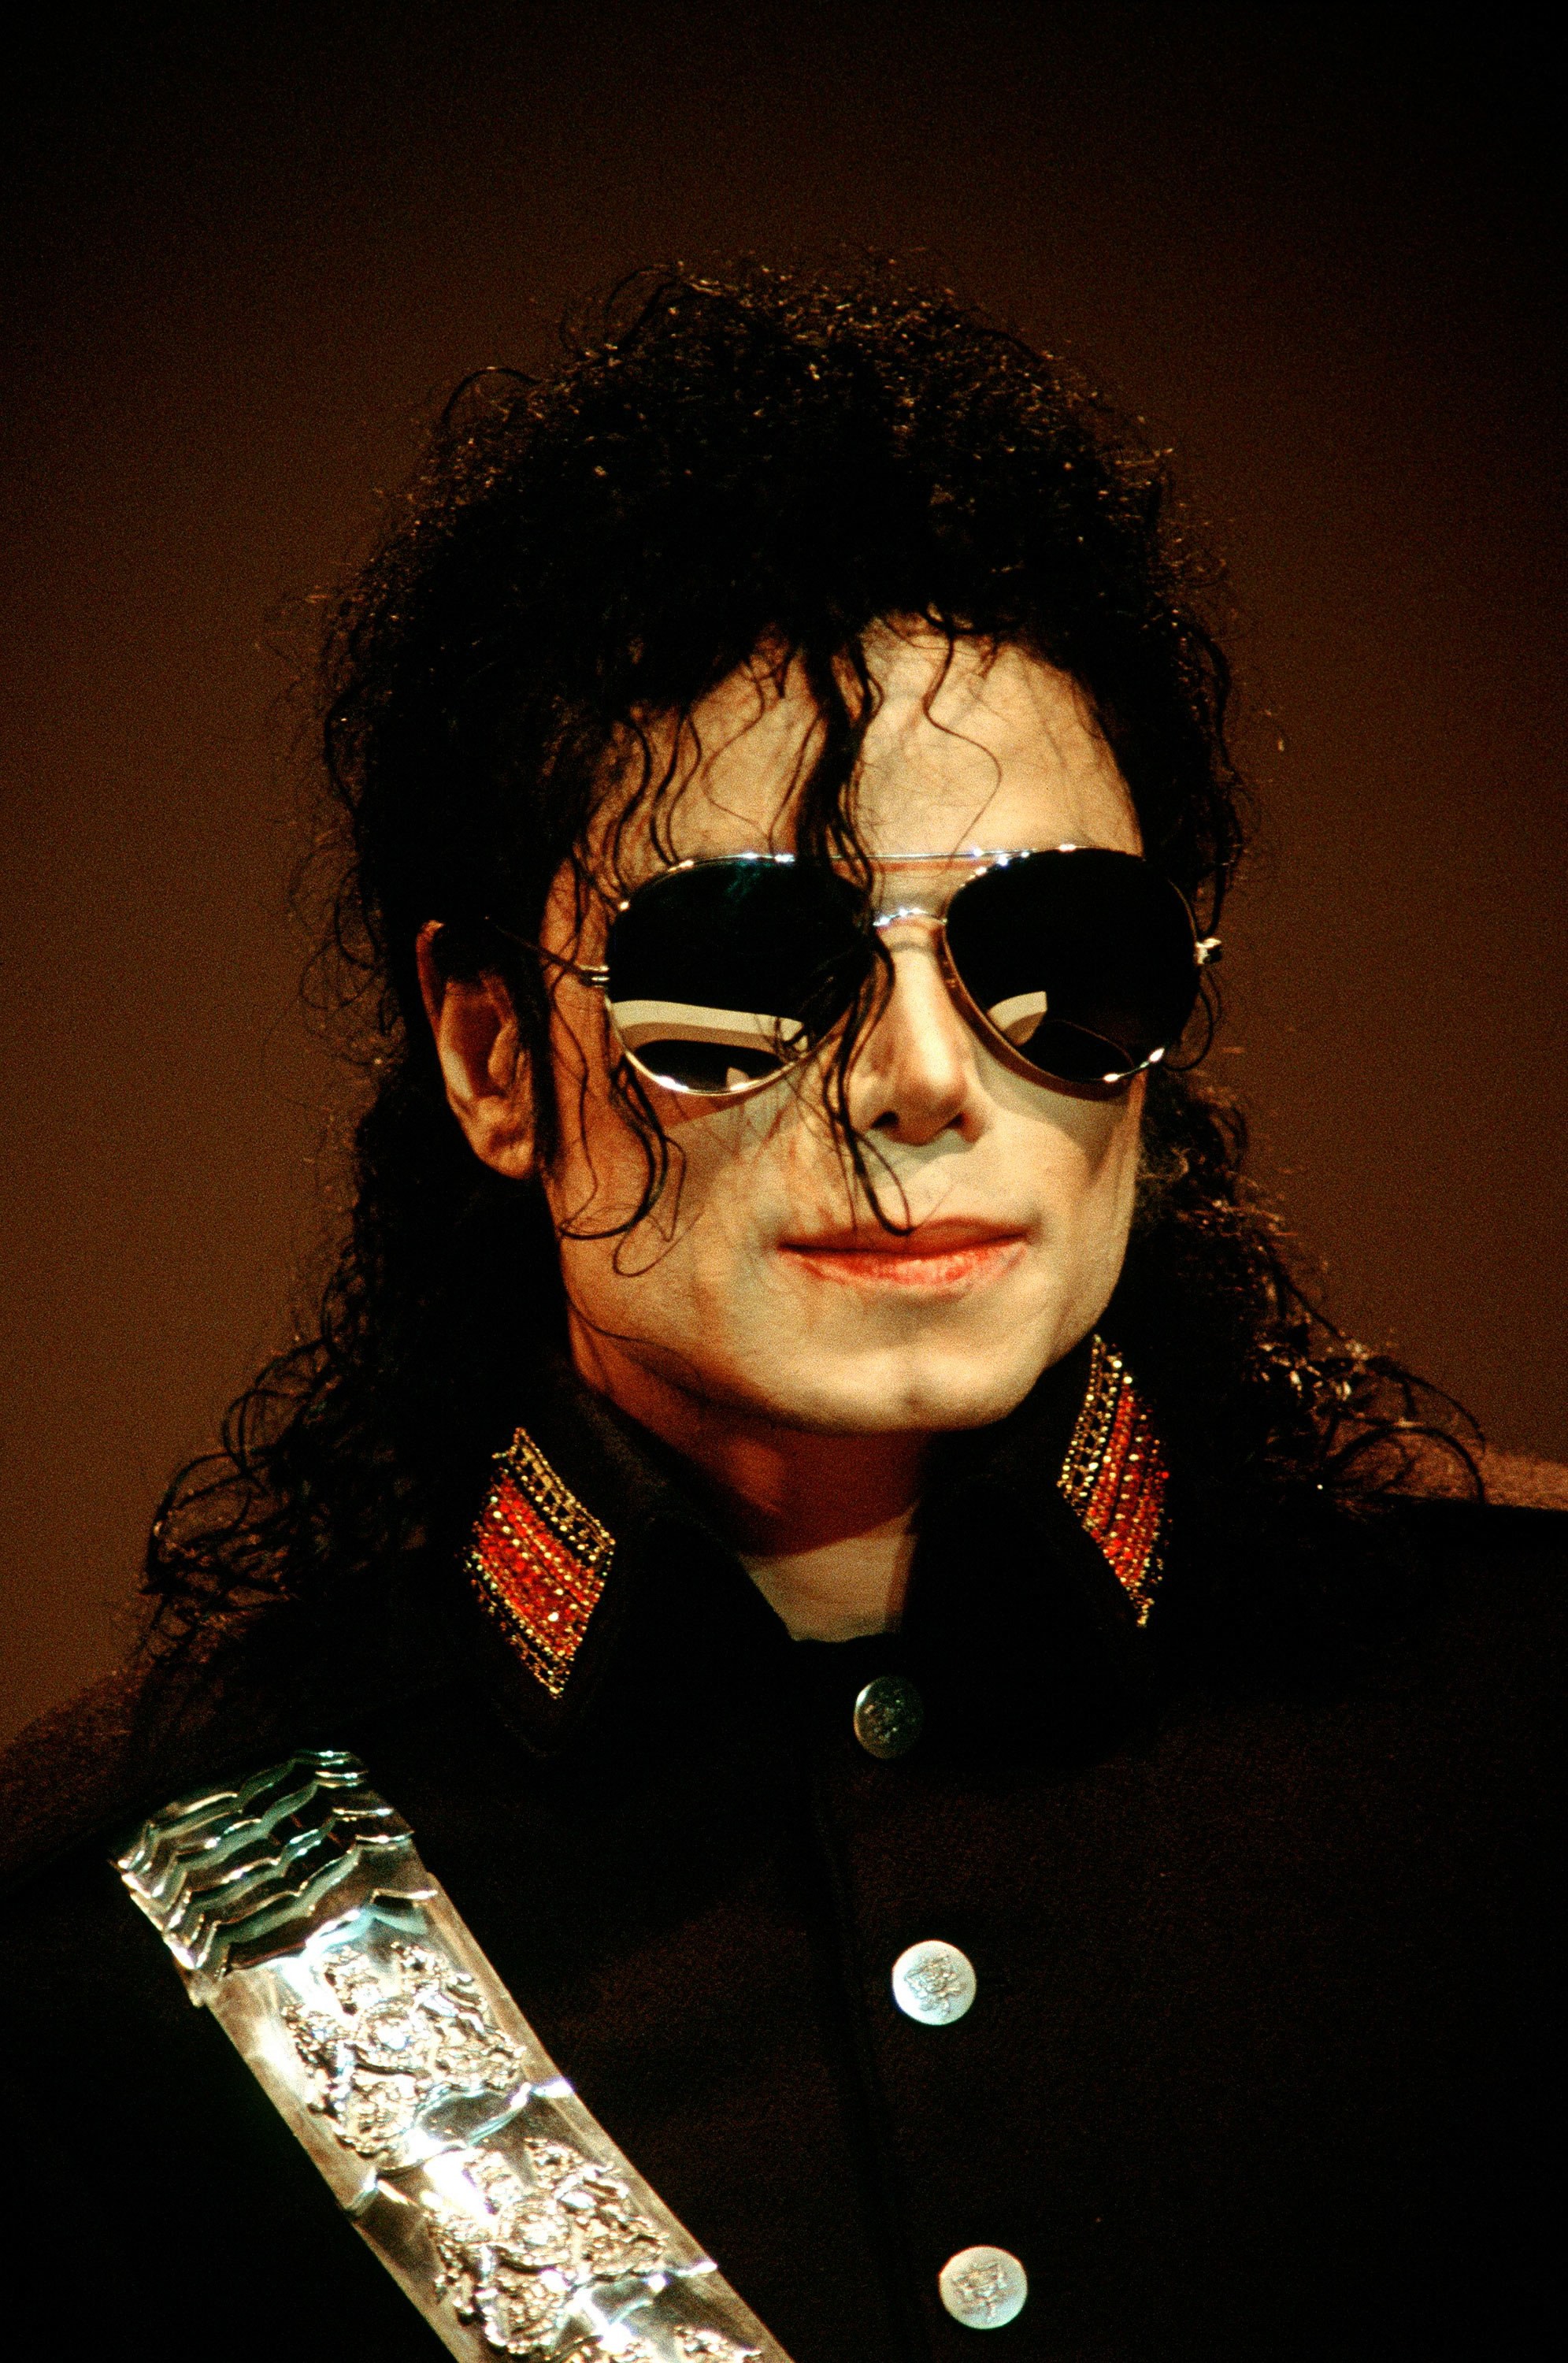 Đấu giá 127 triệu đồng chiếc mũ huyền thoại Michael Jackson